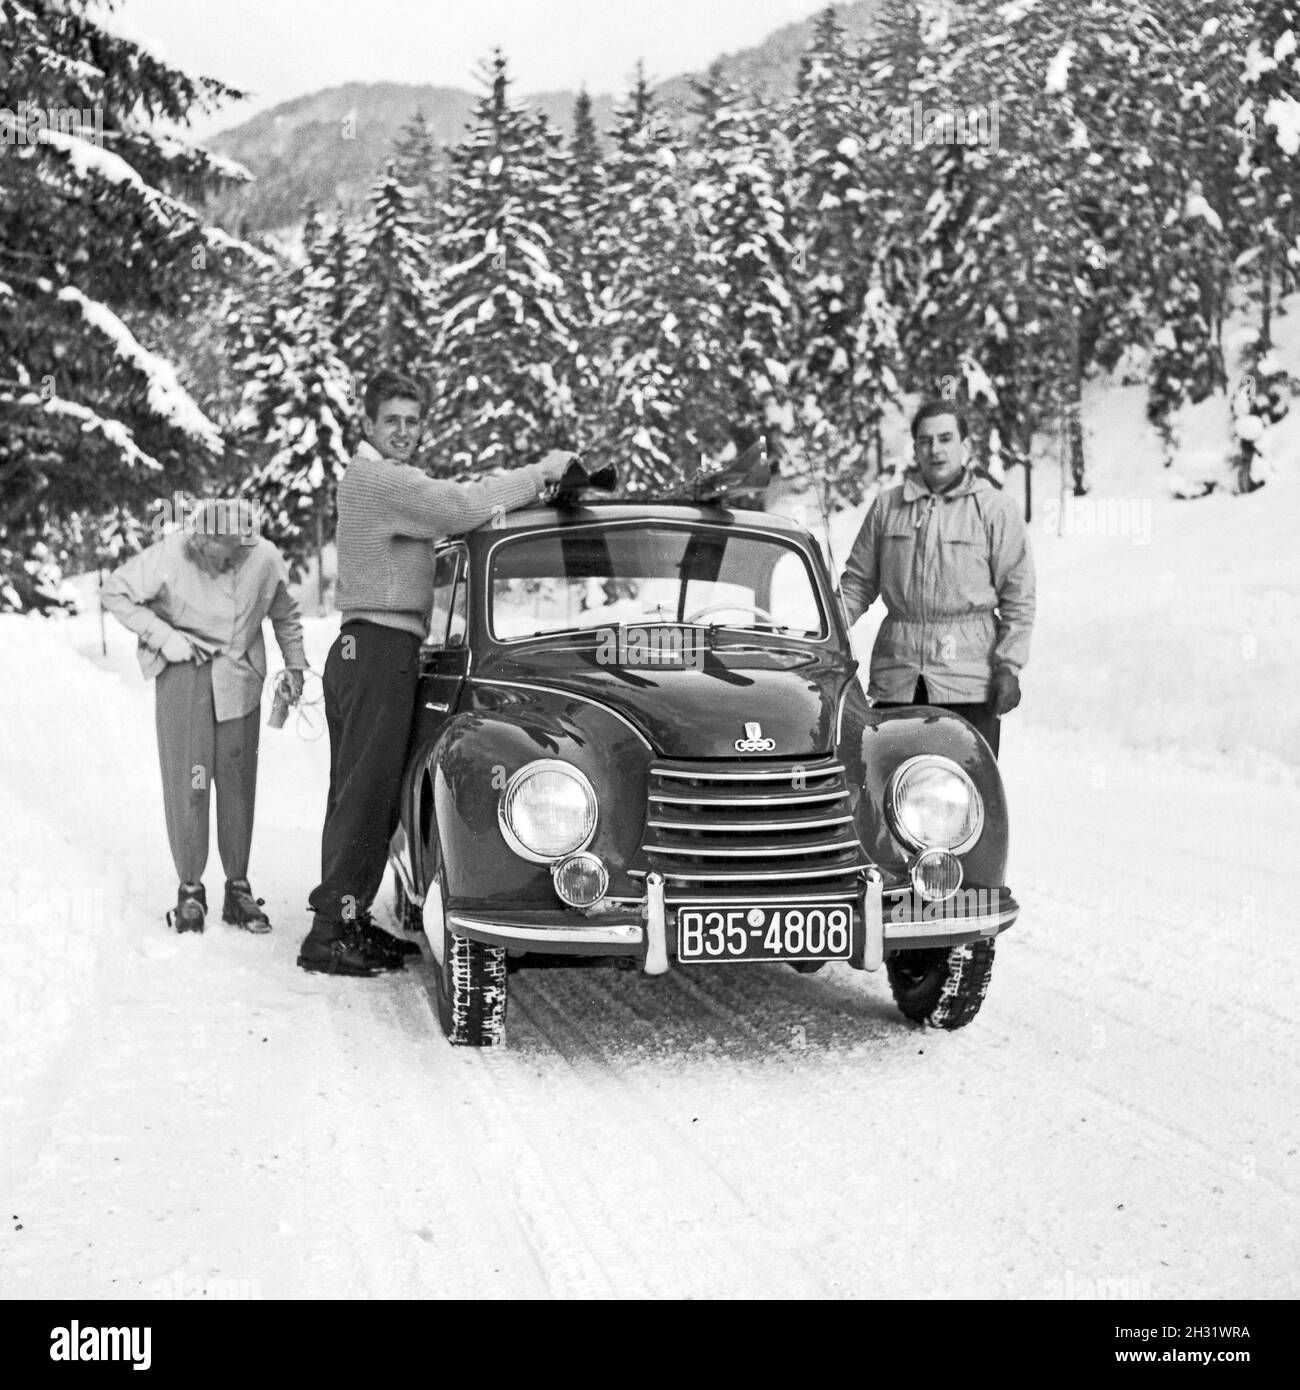 Mit dem DKW 1000 auf verschneiten Straßen in der Winterurlaub, Deutschland 1957. Going to a ski vacation with a DKW 1000 car, Germany 1957. Stock Photo